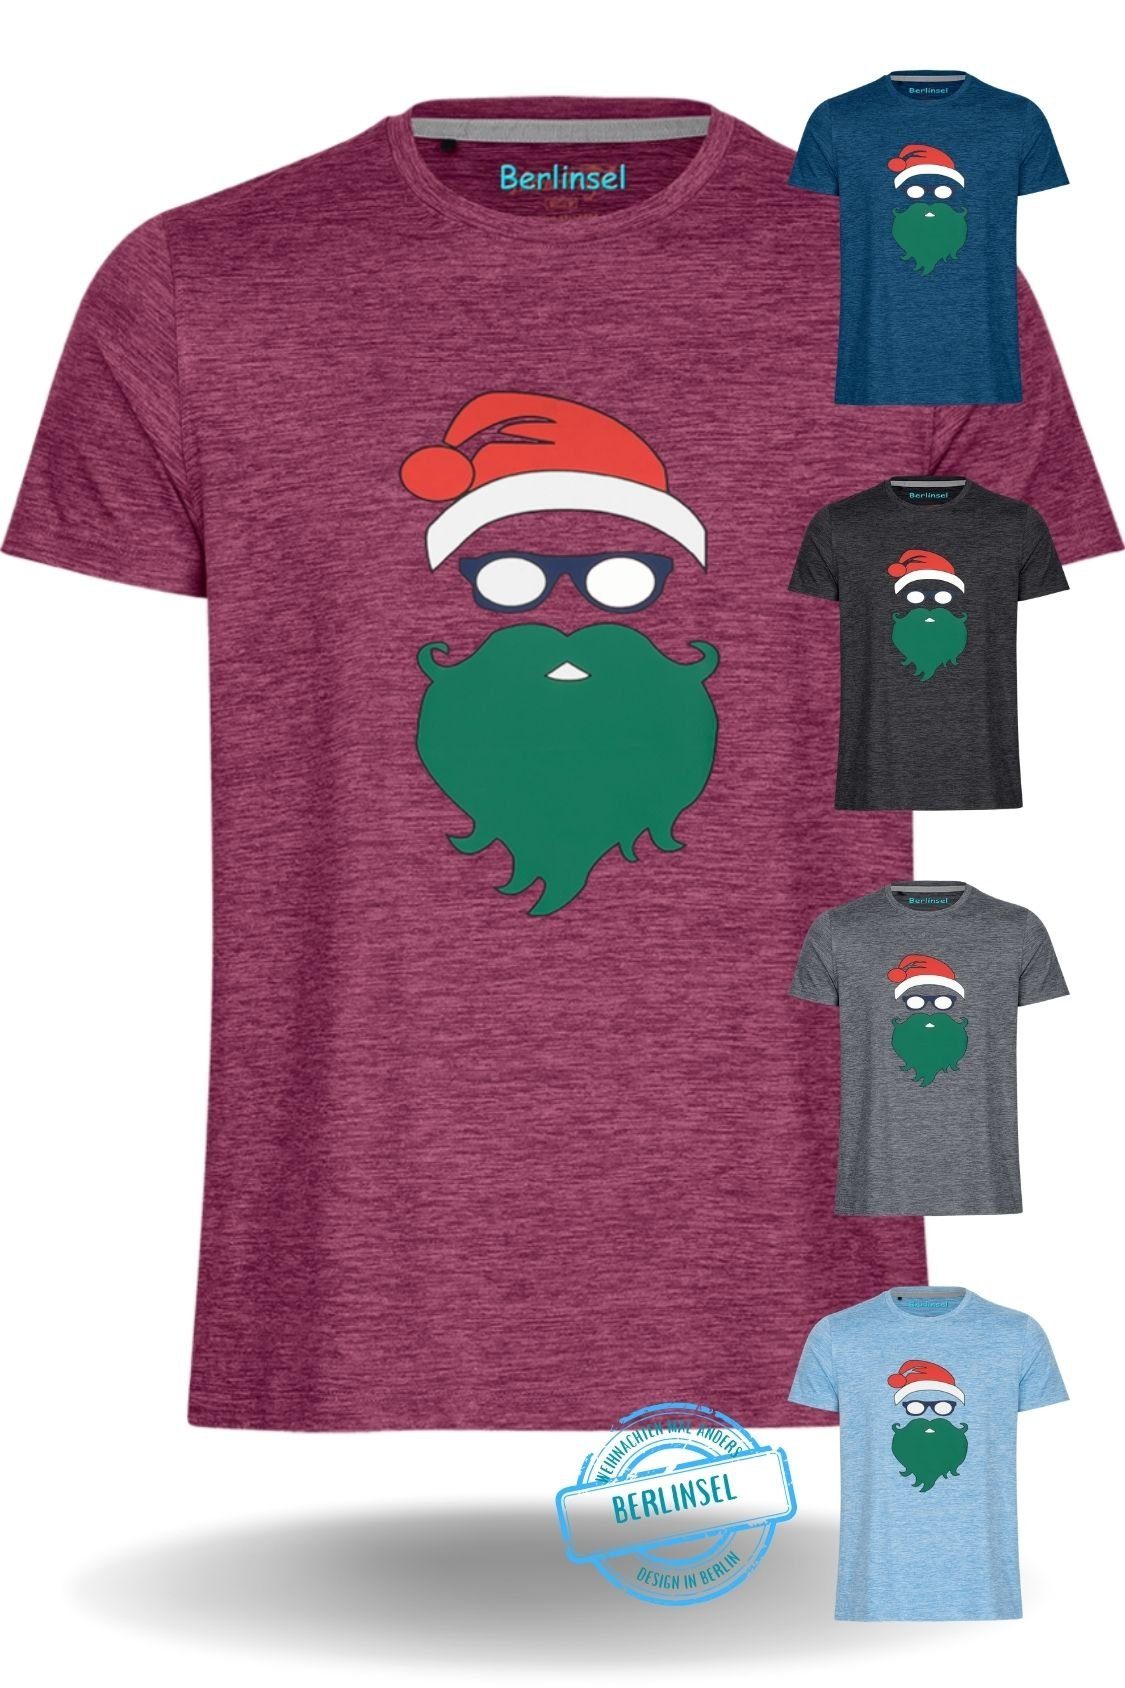 Berlinsel T-Shirt Printshirt Weihnachtsshirt Männer Weihnachtsoutfit Herren Weihnachtsfeier, Weihnachtsgeschenk, Weihnachtsfoto weinrot